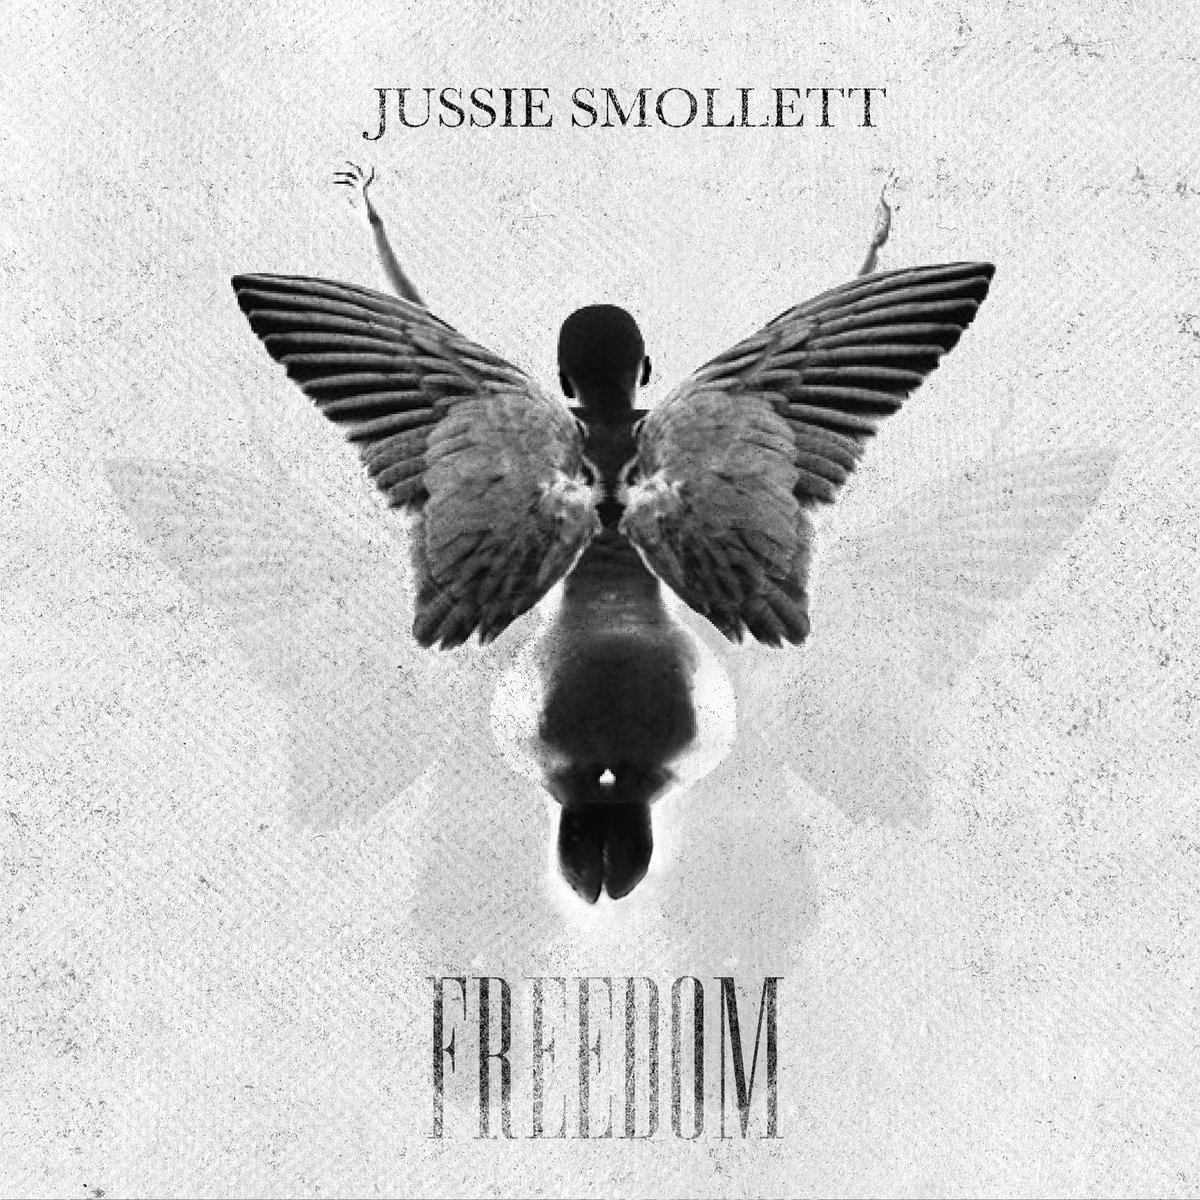 New Music: Jussie Smollett – Freedom